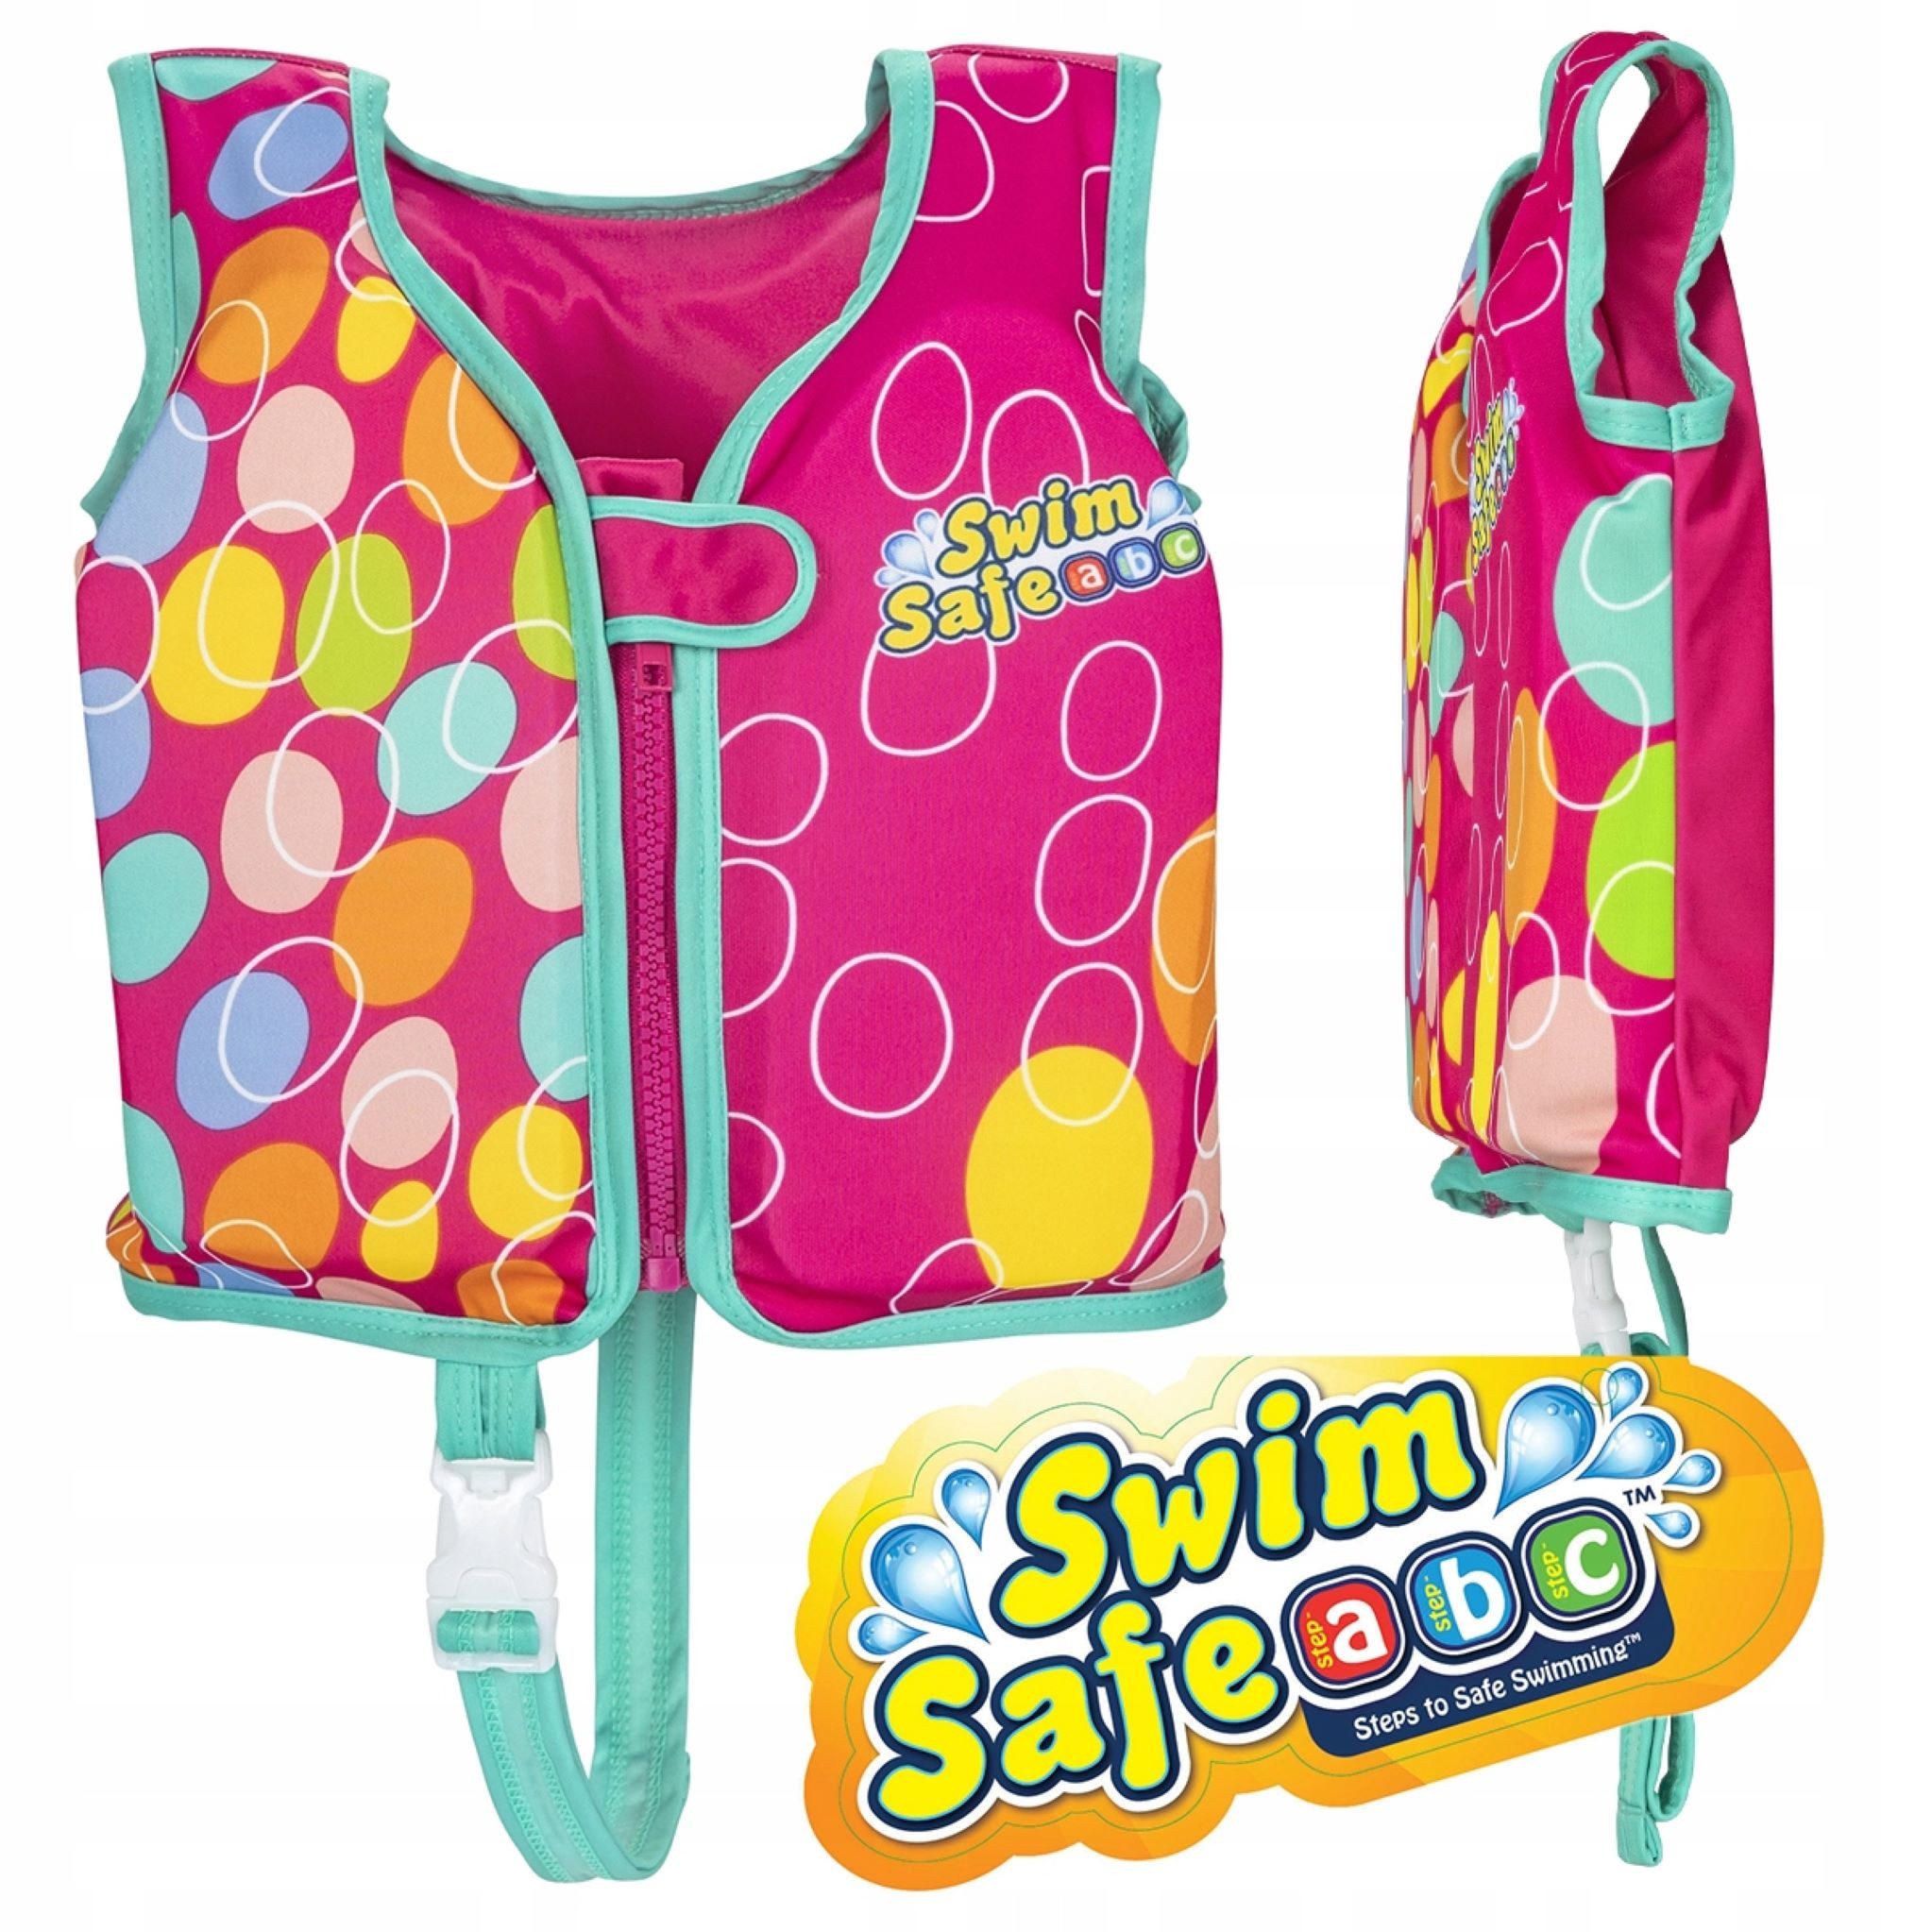 Festivalartikel Schwimmweste Bestway Kinder Schwimmweste Kapok 11-19kg S/M UV-Schutz